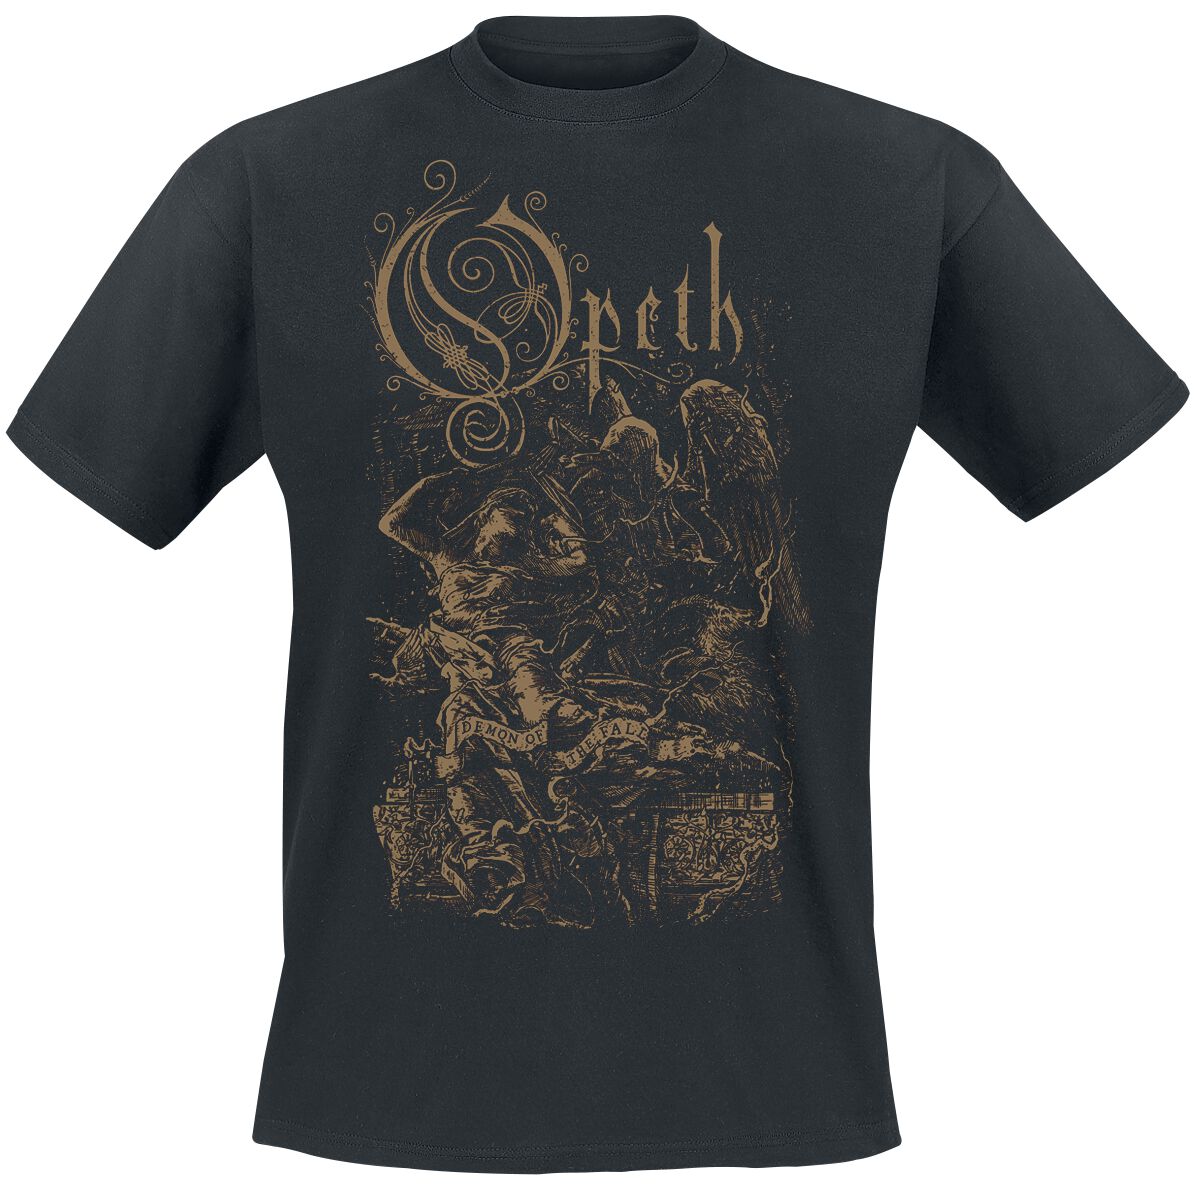 Opeth T-Shirt - Demon Of The Fall - S bis XXL - für Männer - Größe XL - schwarz  - Lizenziertes Merchandise!